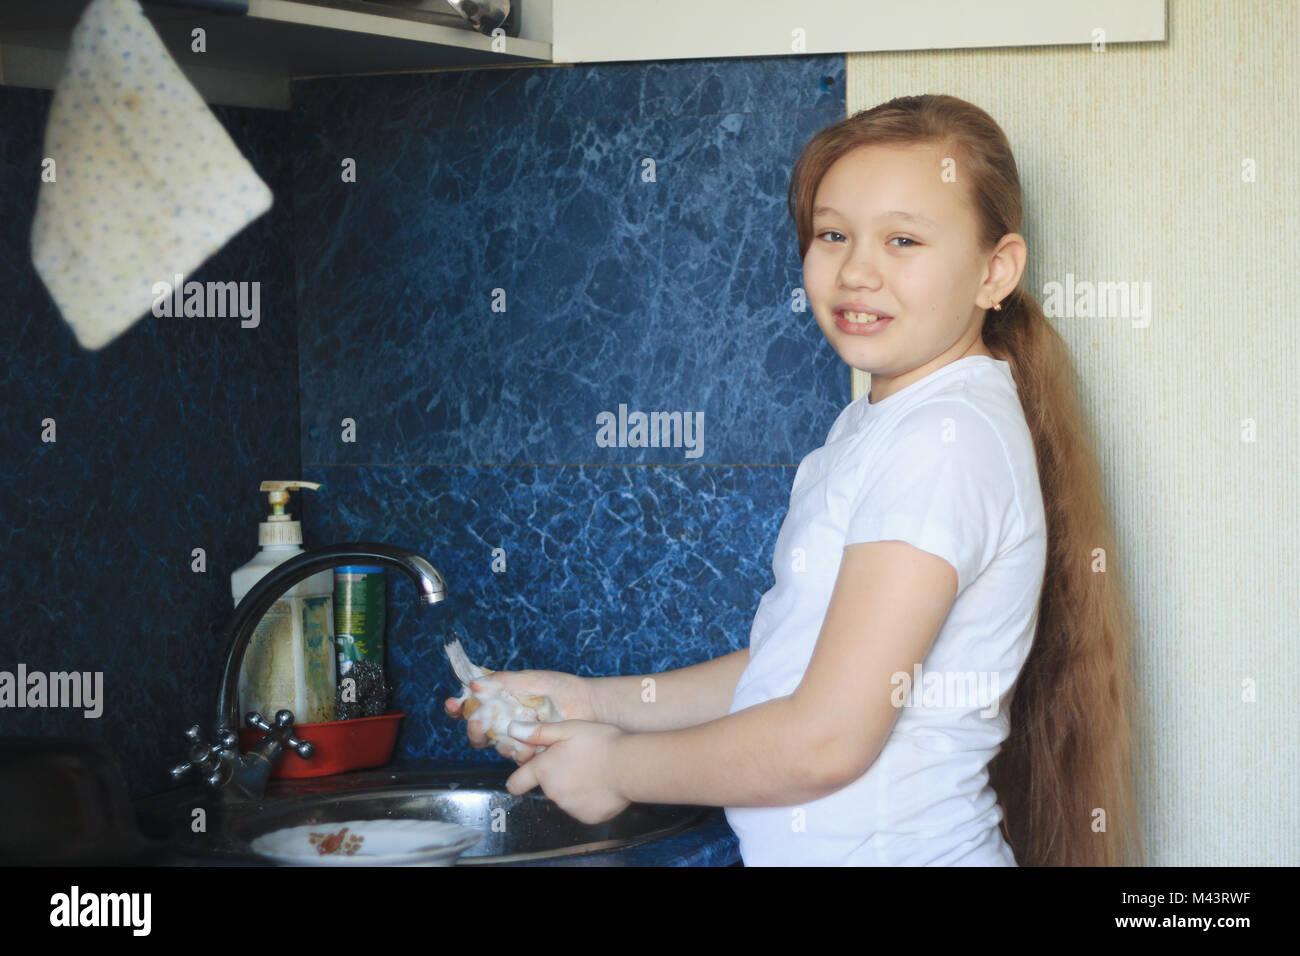 Porträt Einer Jugendlich Mädchen 12 Jahre Alt Ist Beim Abwasch In Der Küche Stockfotografie Alamy